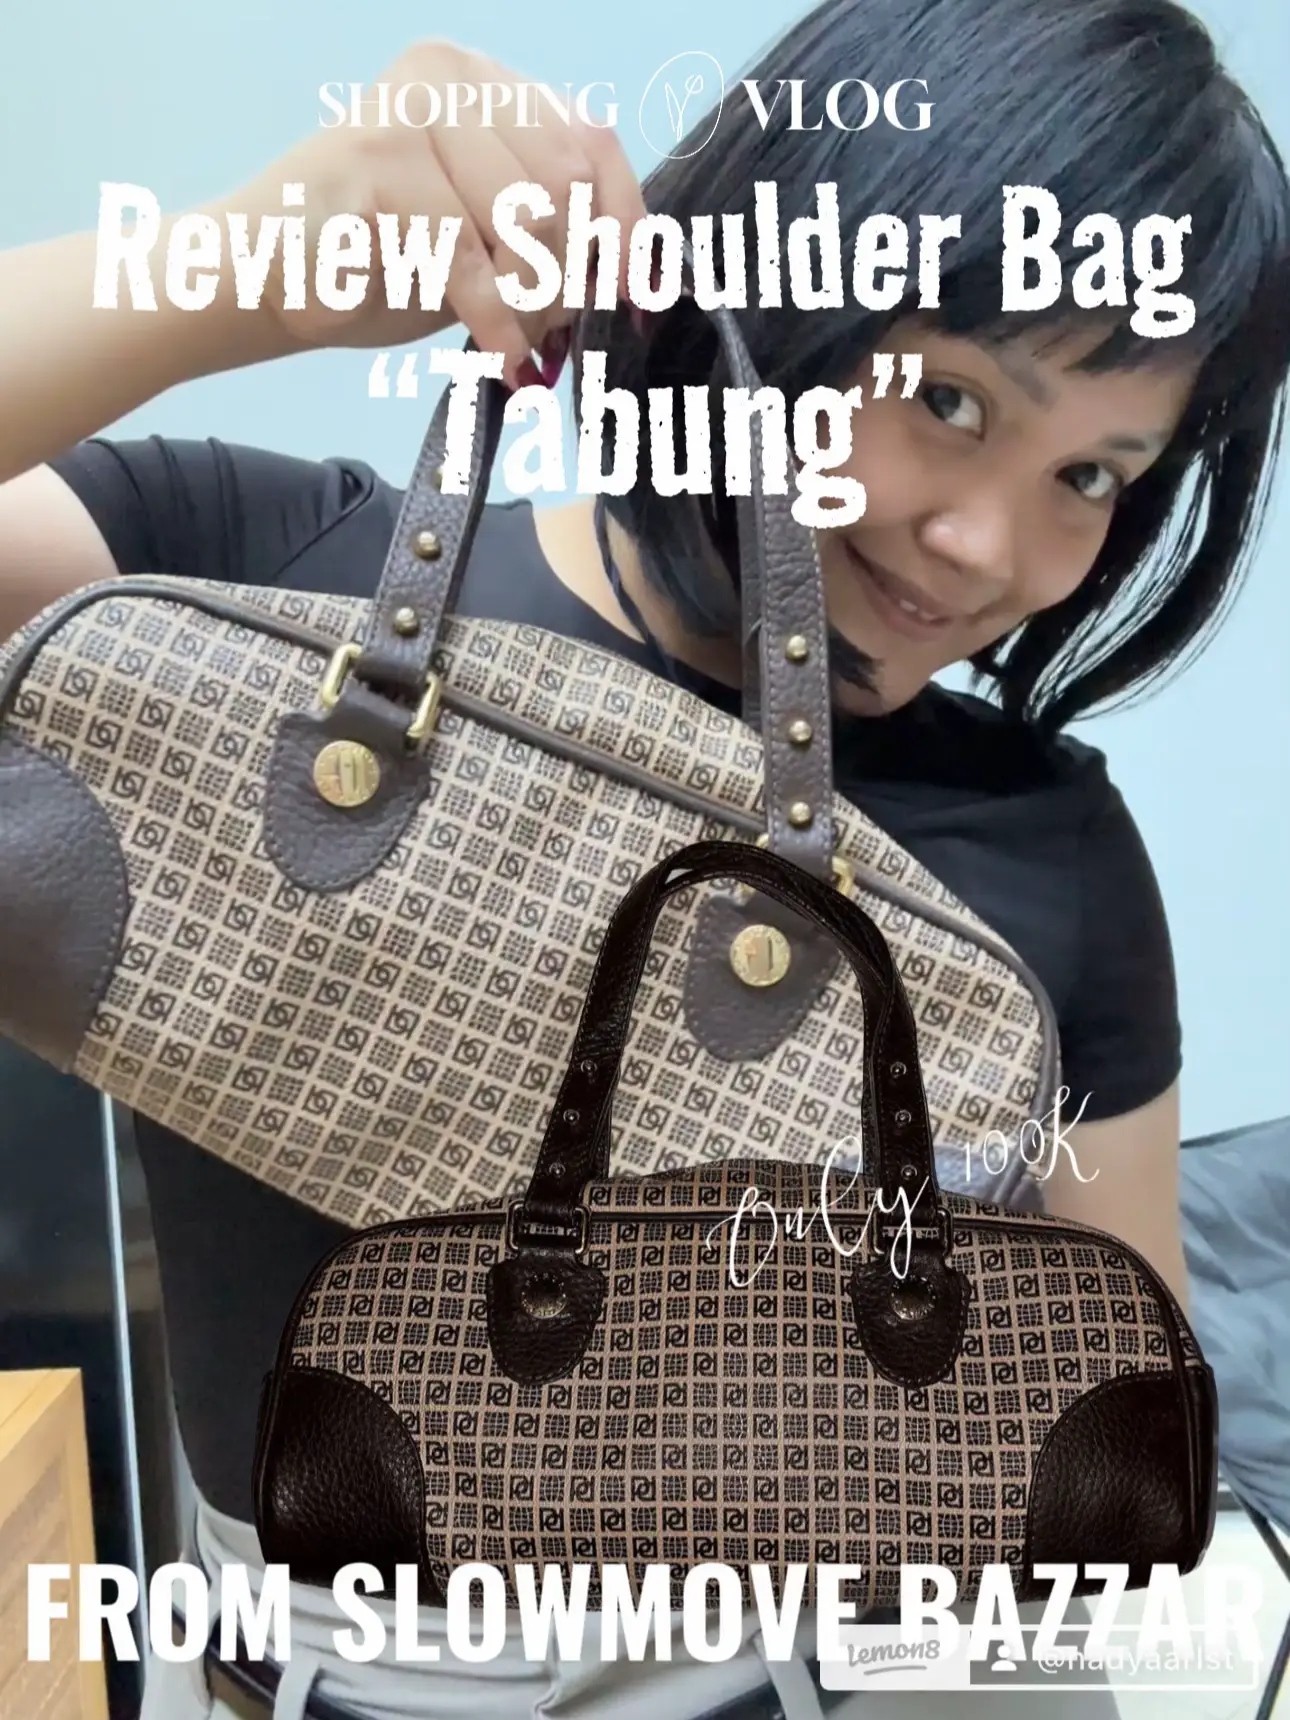 Unboxing & Honest Review on Louis Vuitton Petit Sac Plat Mini Bag